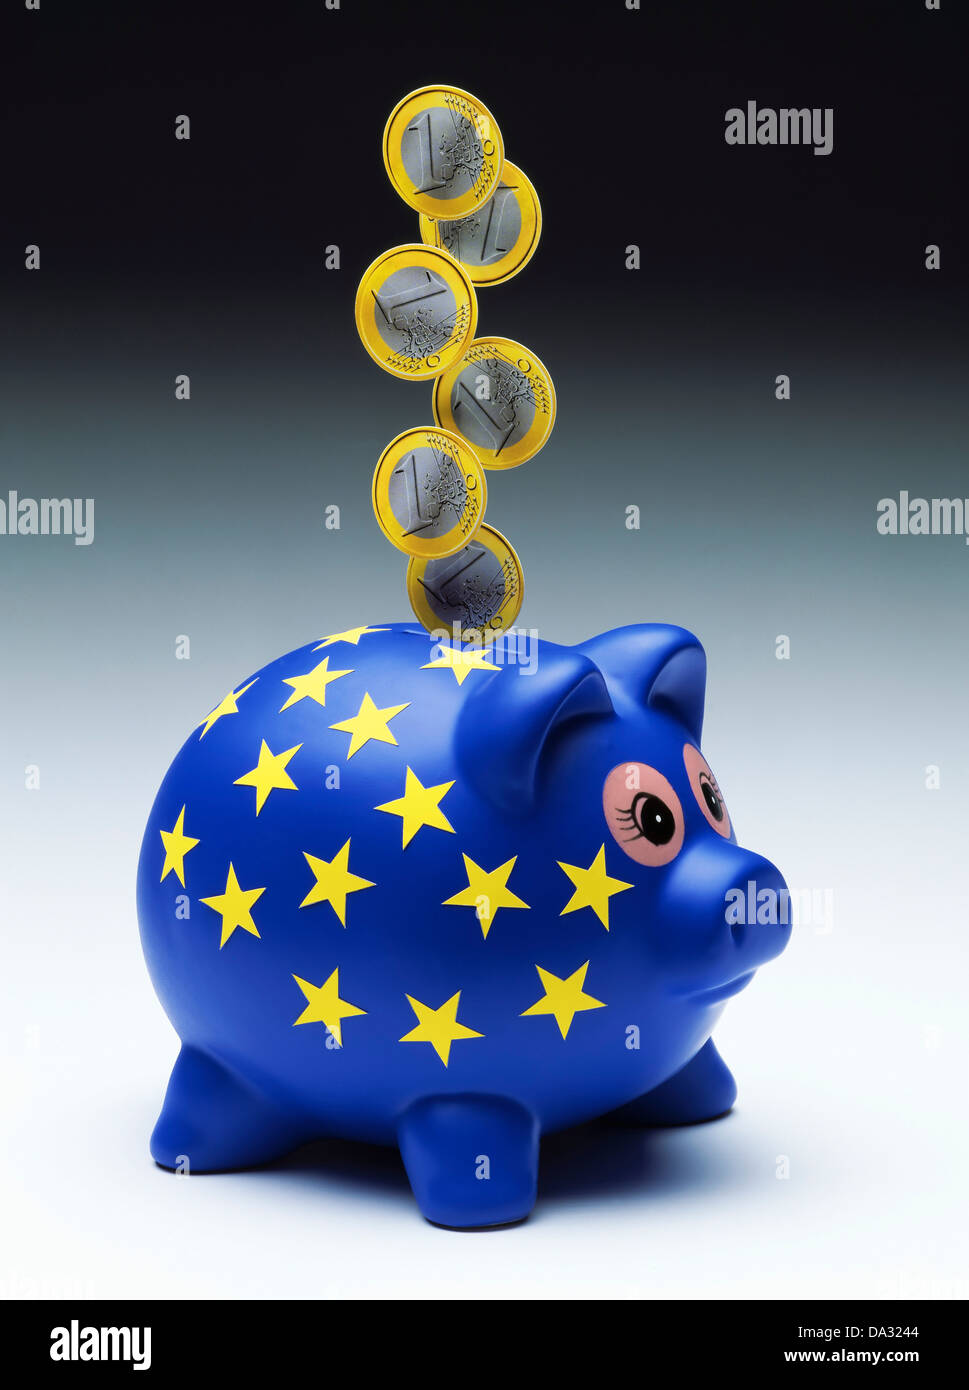 Monedas de 1 Euro caiga en la ranura de una alcancía europea Foto de stock